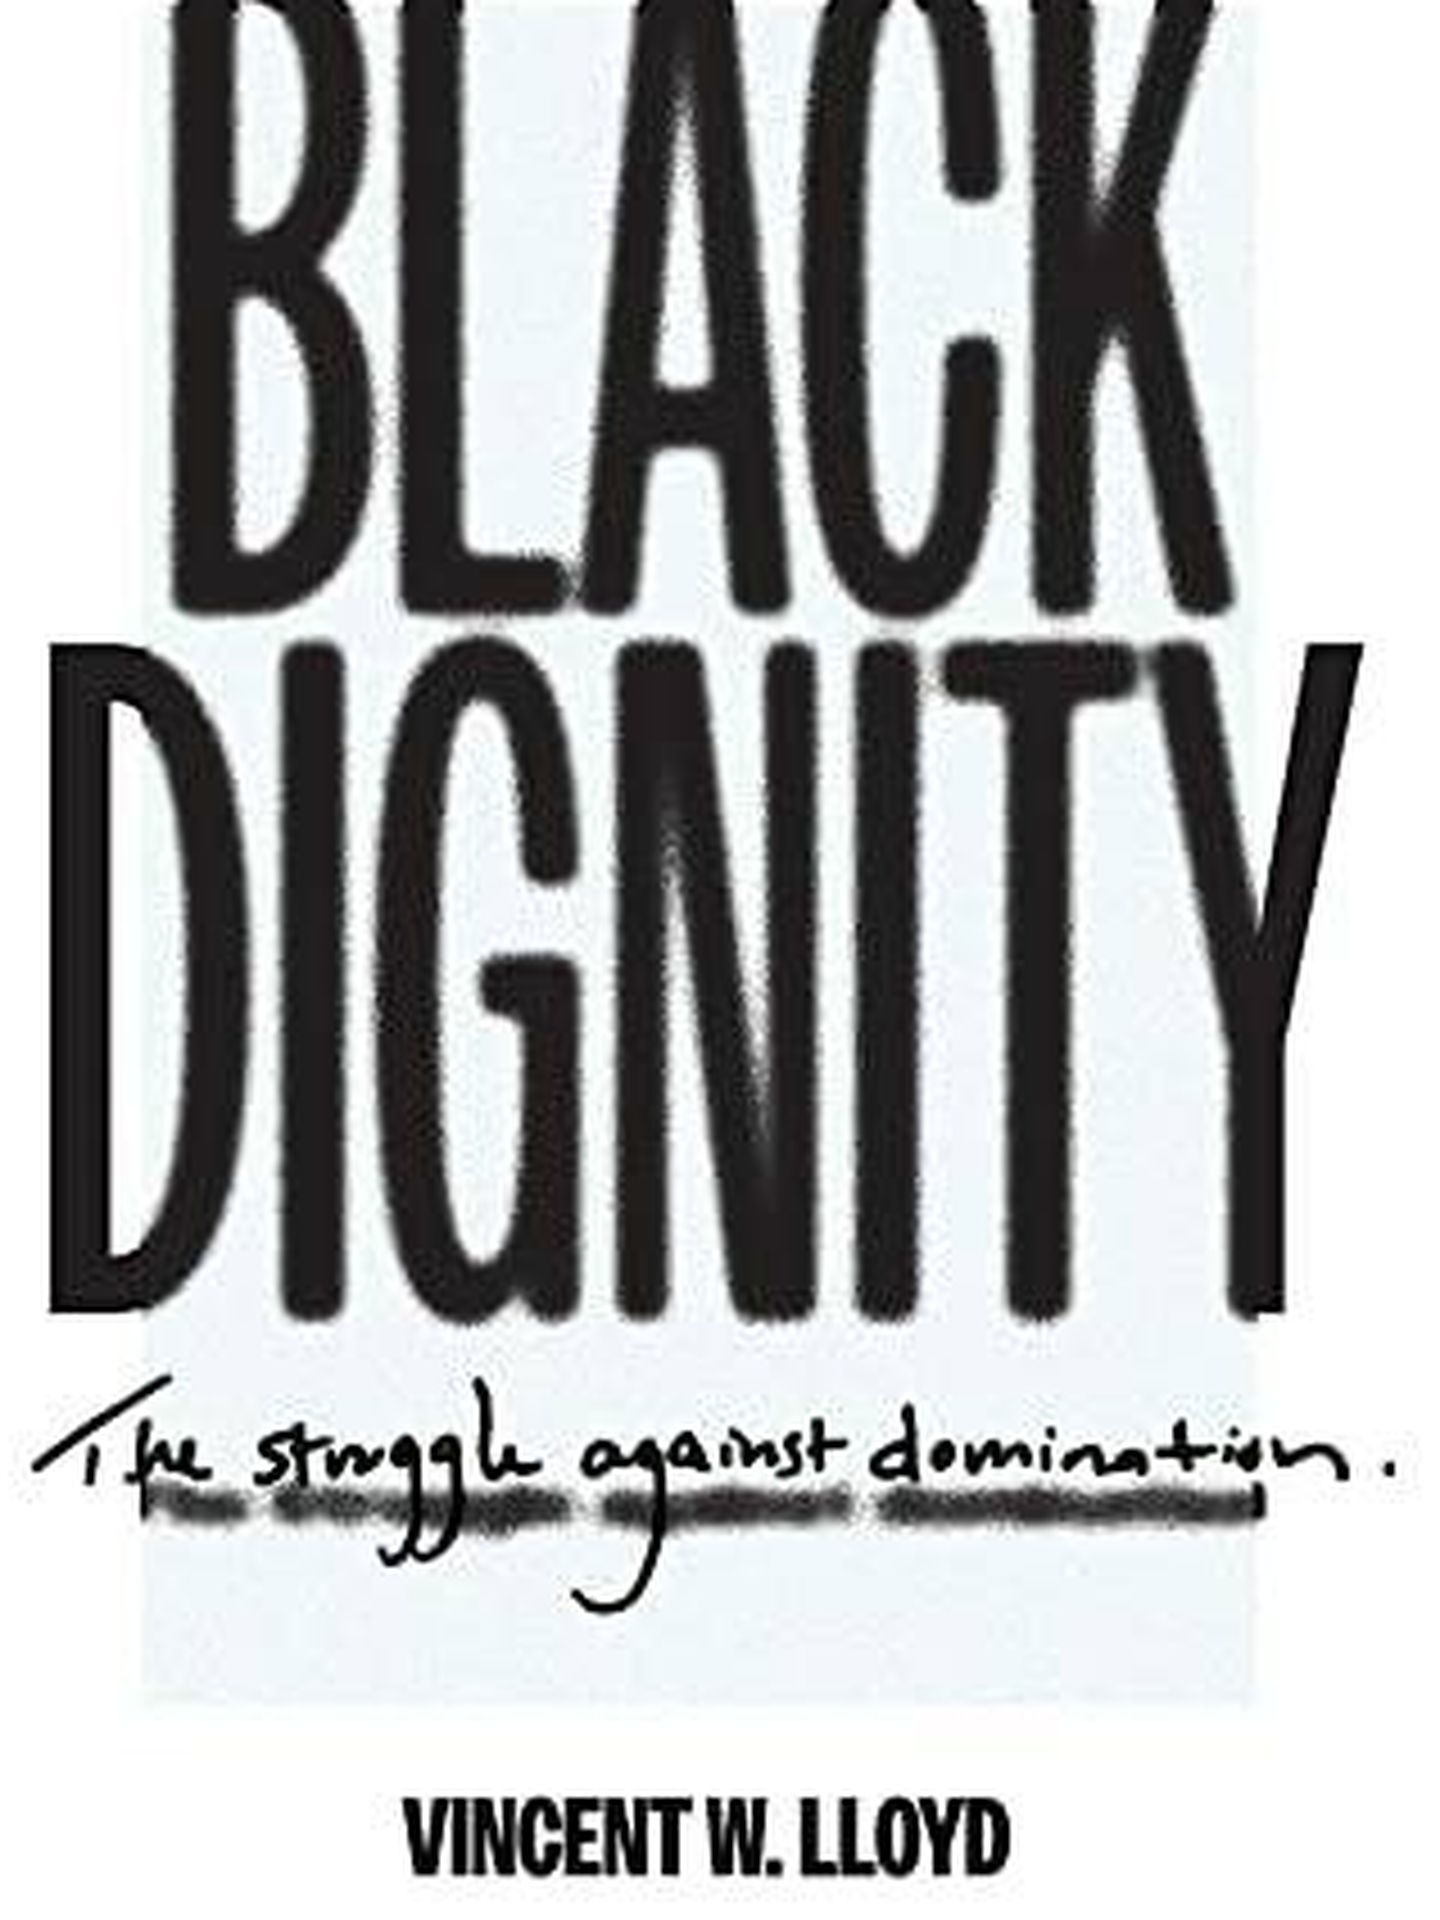 Portada del libro de Vincent Lloyd 'Black Dignity, the Struggle Against Domination'